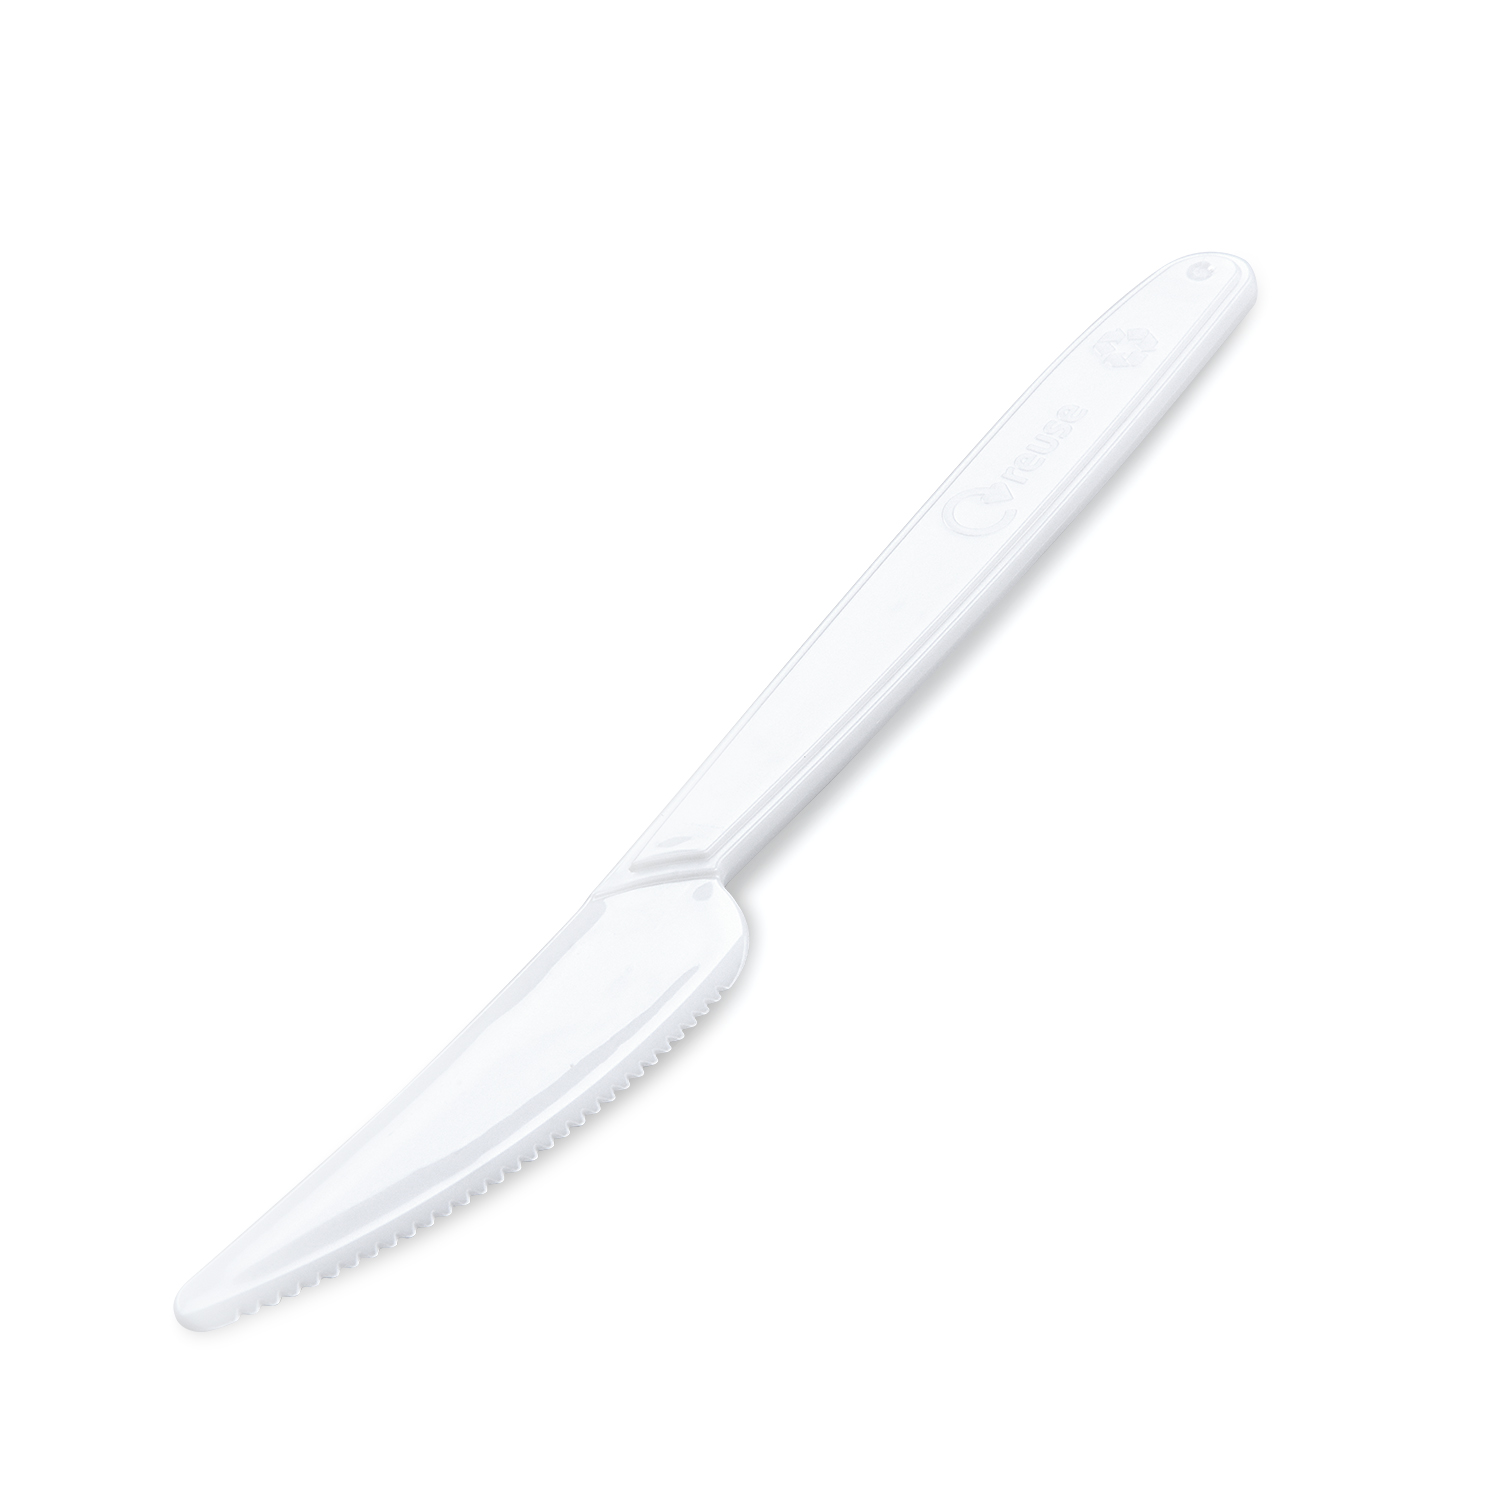 Messer (PP) wiederverwendbar weiß 18,5cm - 50 Stück